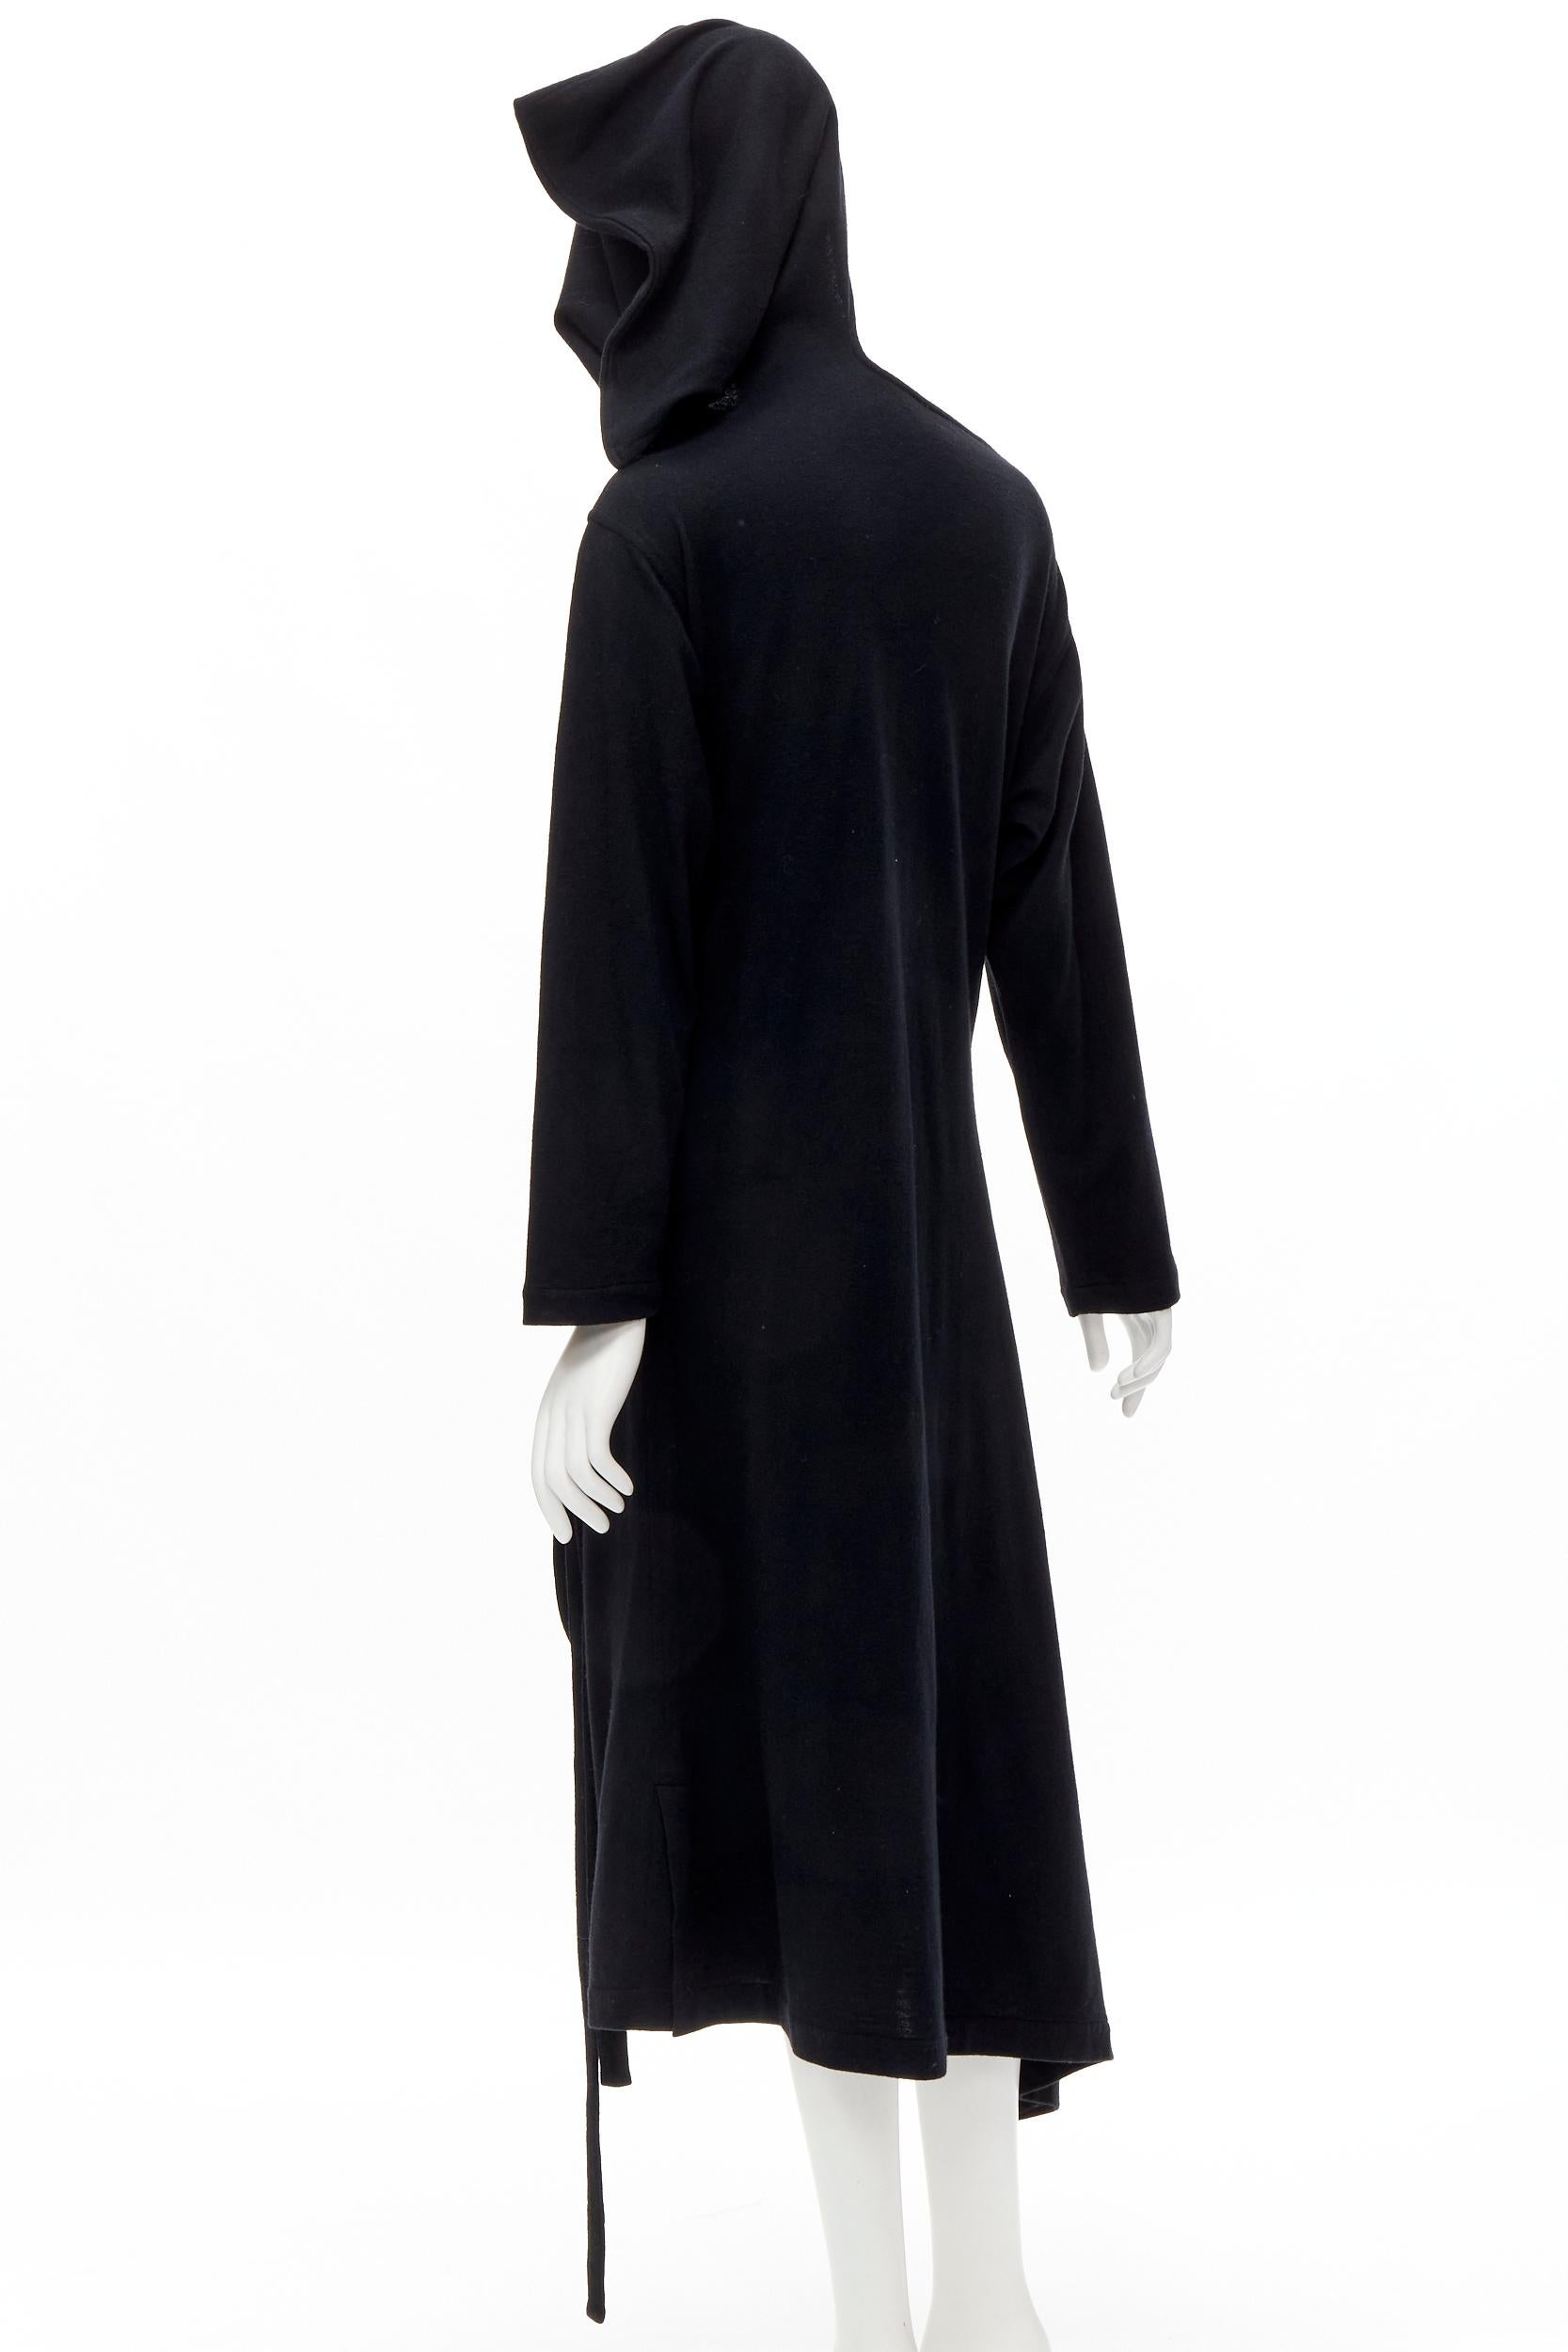 rare COMME DES GARCONS 1980's Vintage black asymmetric neckline hooded dress M For Sale 1